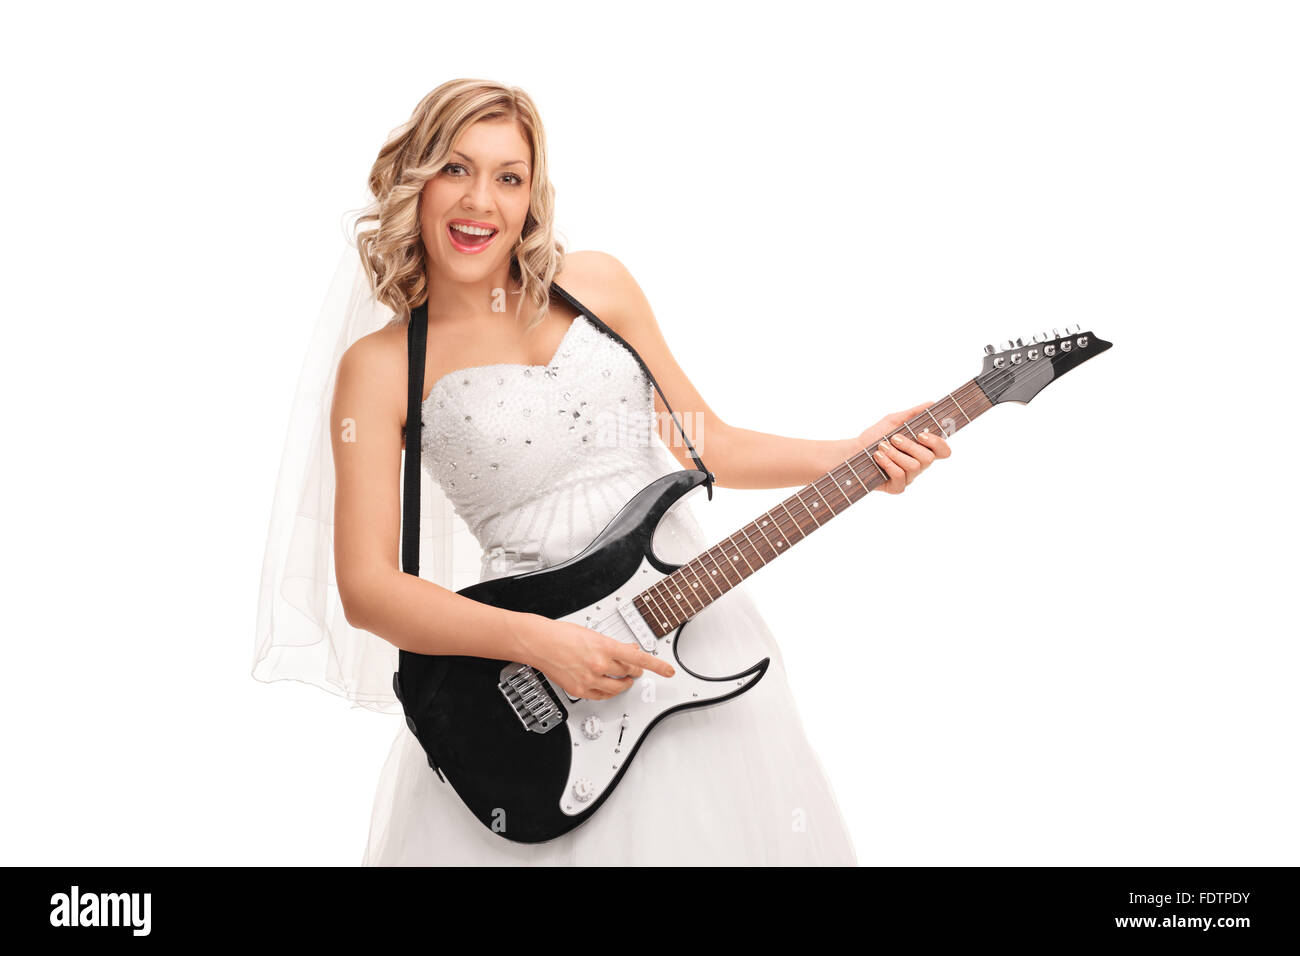 Jeune mariée joyeuse dans une robe de mariée blanche playing electric guitar isolé sur fond blanc Banque D'Images